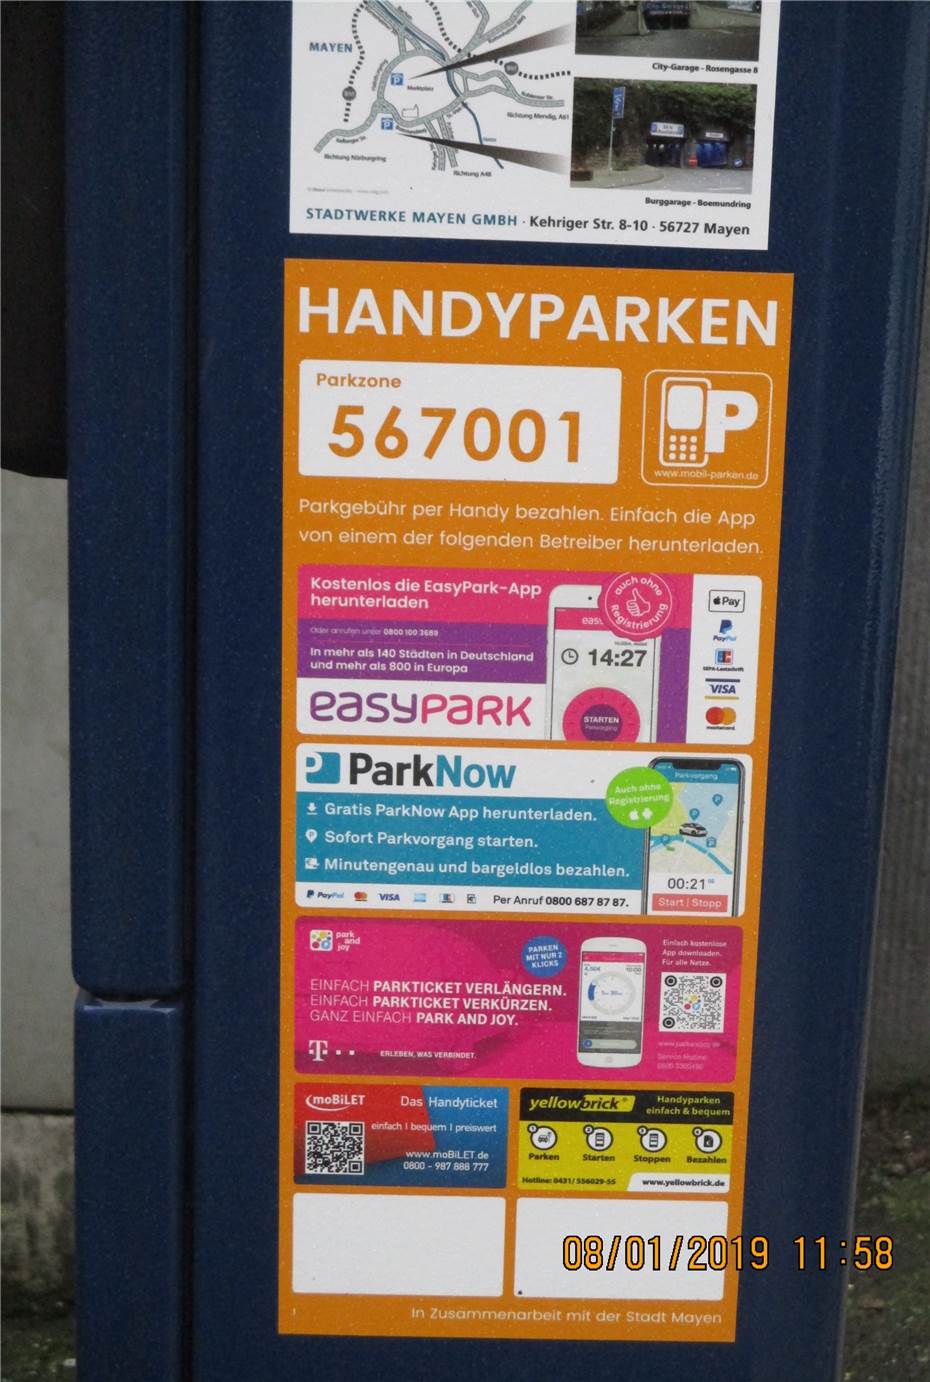 Handy-Park-App-Anbieter EasyPark gehackt: Daten gestohlen